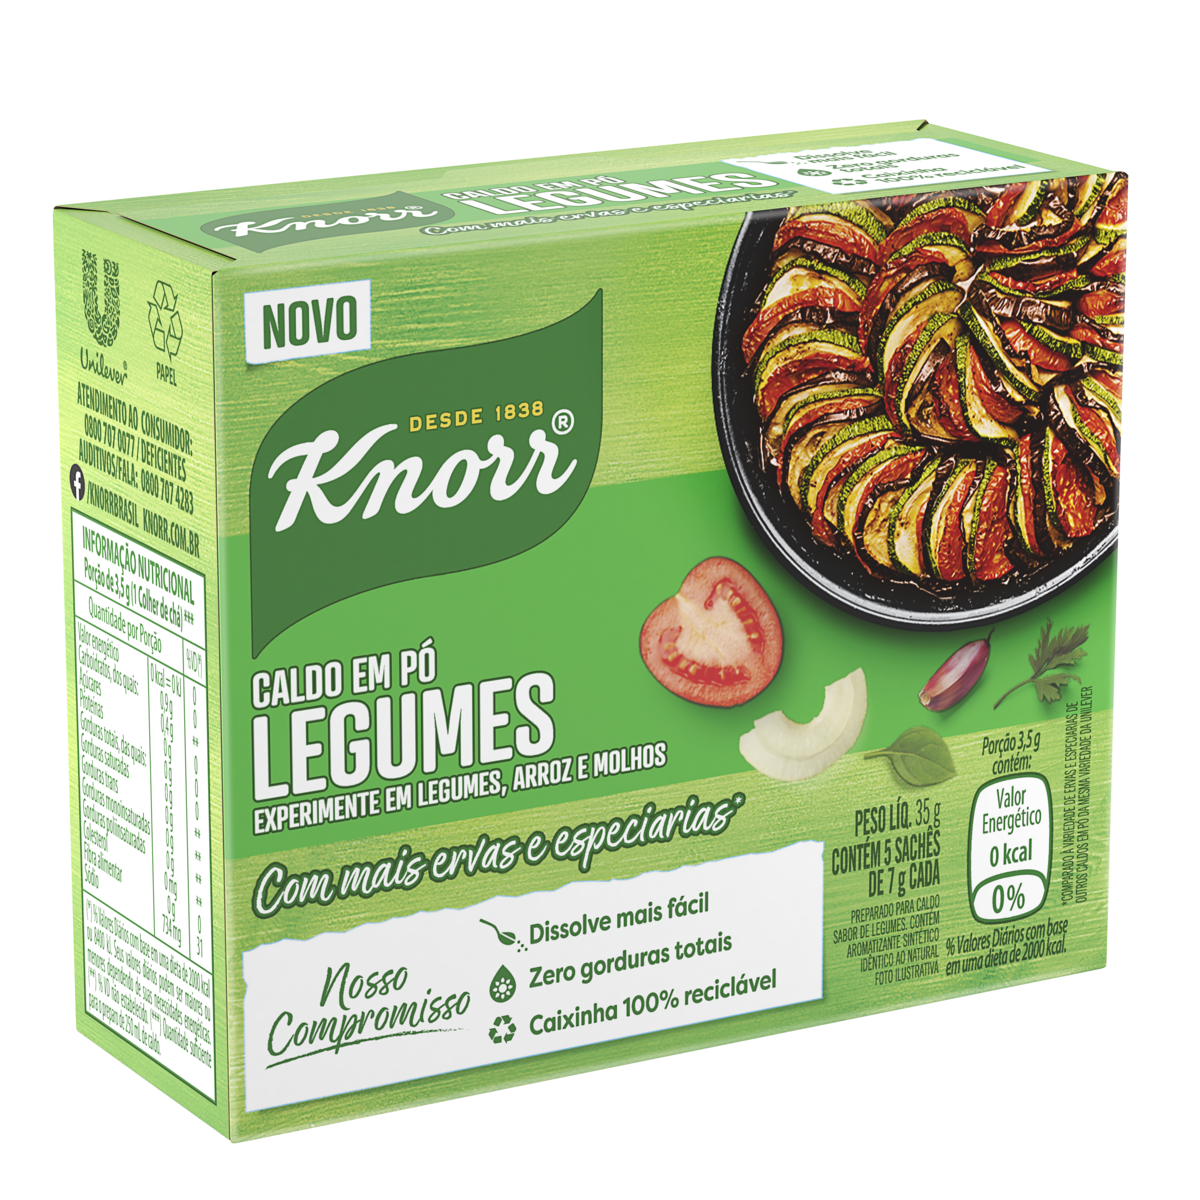 Caldo P Legumes Knorr Caixa G Unidades P O De A Car